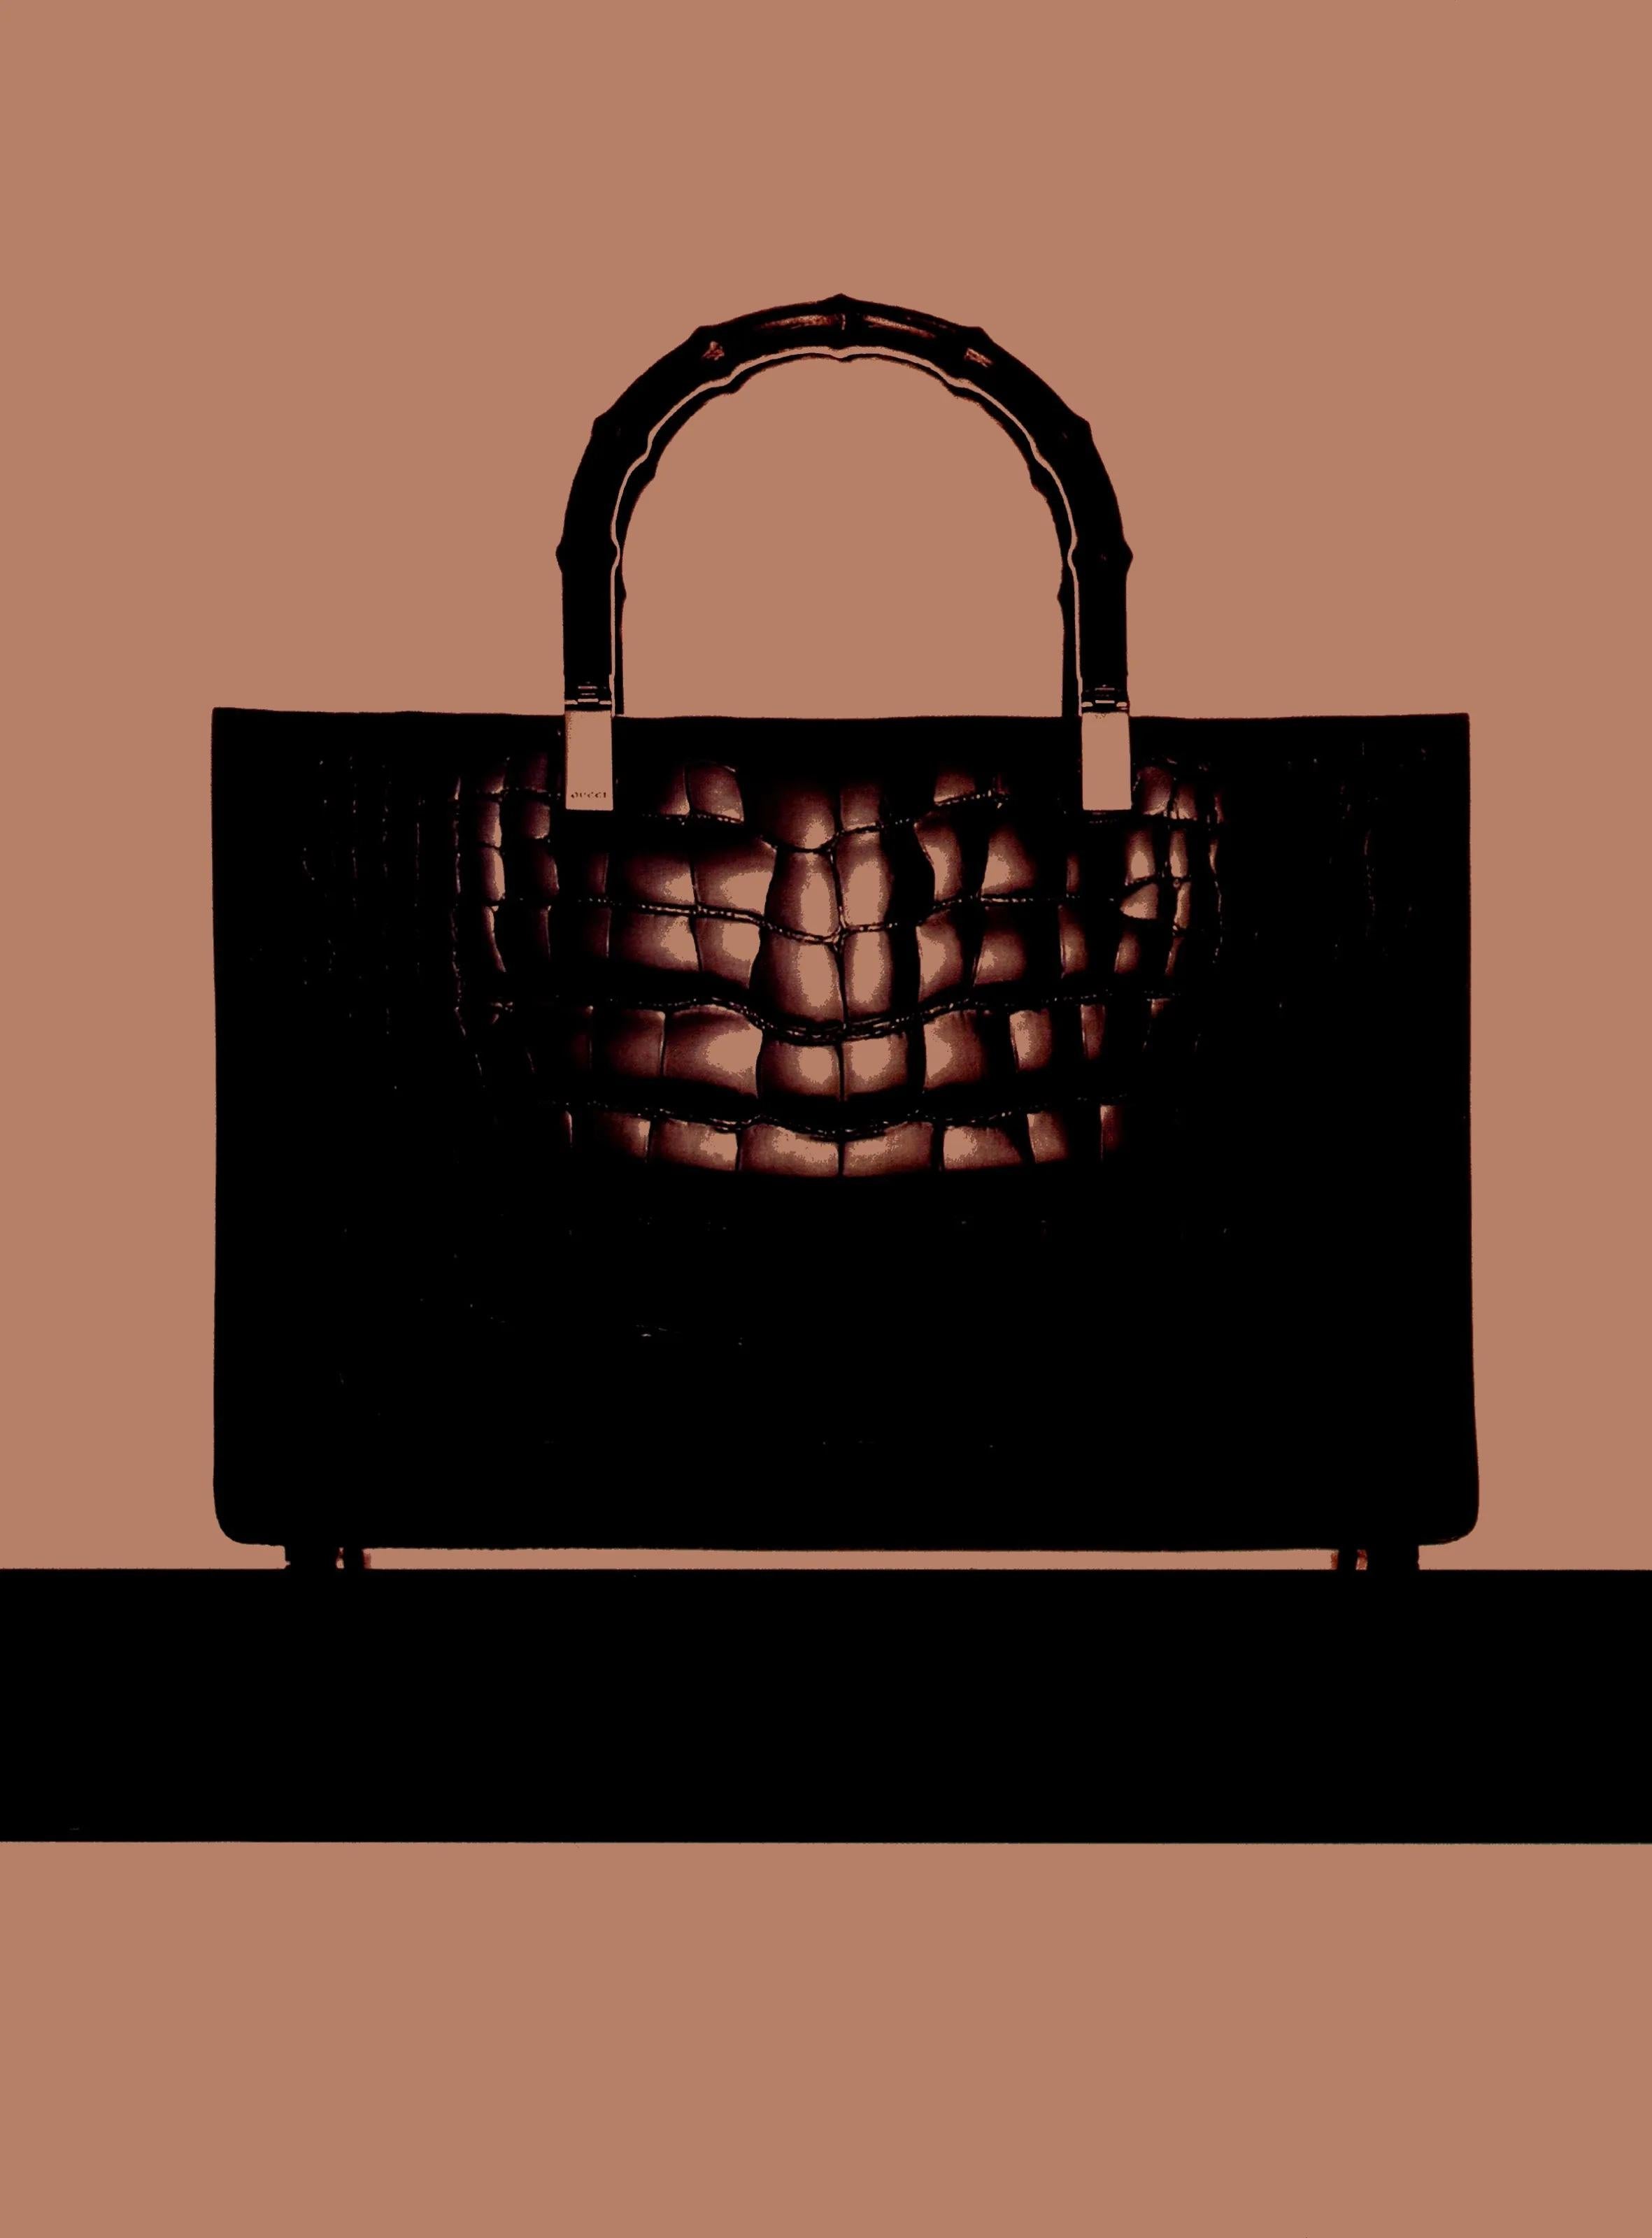 Issu de la collection Automne/Hiver 1998, ce sac en crocodile de Gucci by Tom Ford est un must-have pour tout amateur de Gucci. Entièrement réalisé en crocodile noir brillant, ce sac a été mis en valeur dans la campagne publicitaire de la saison,